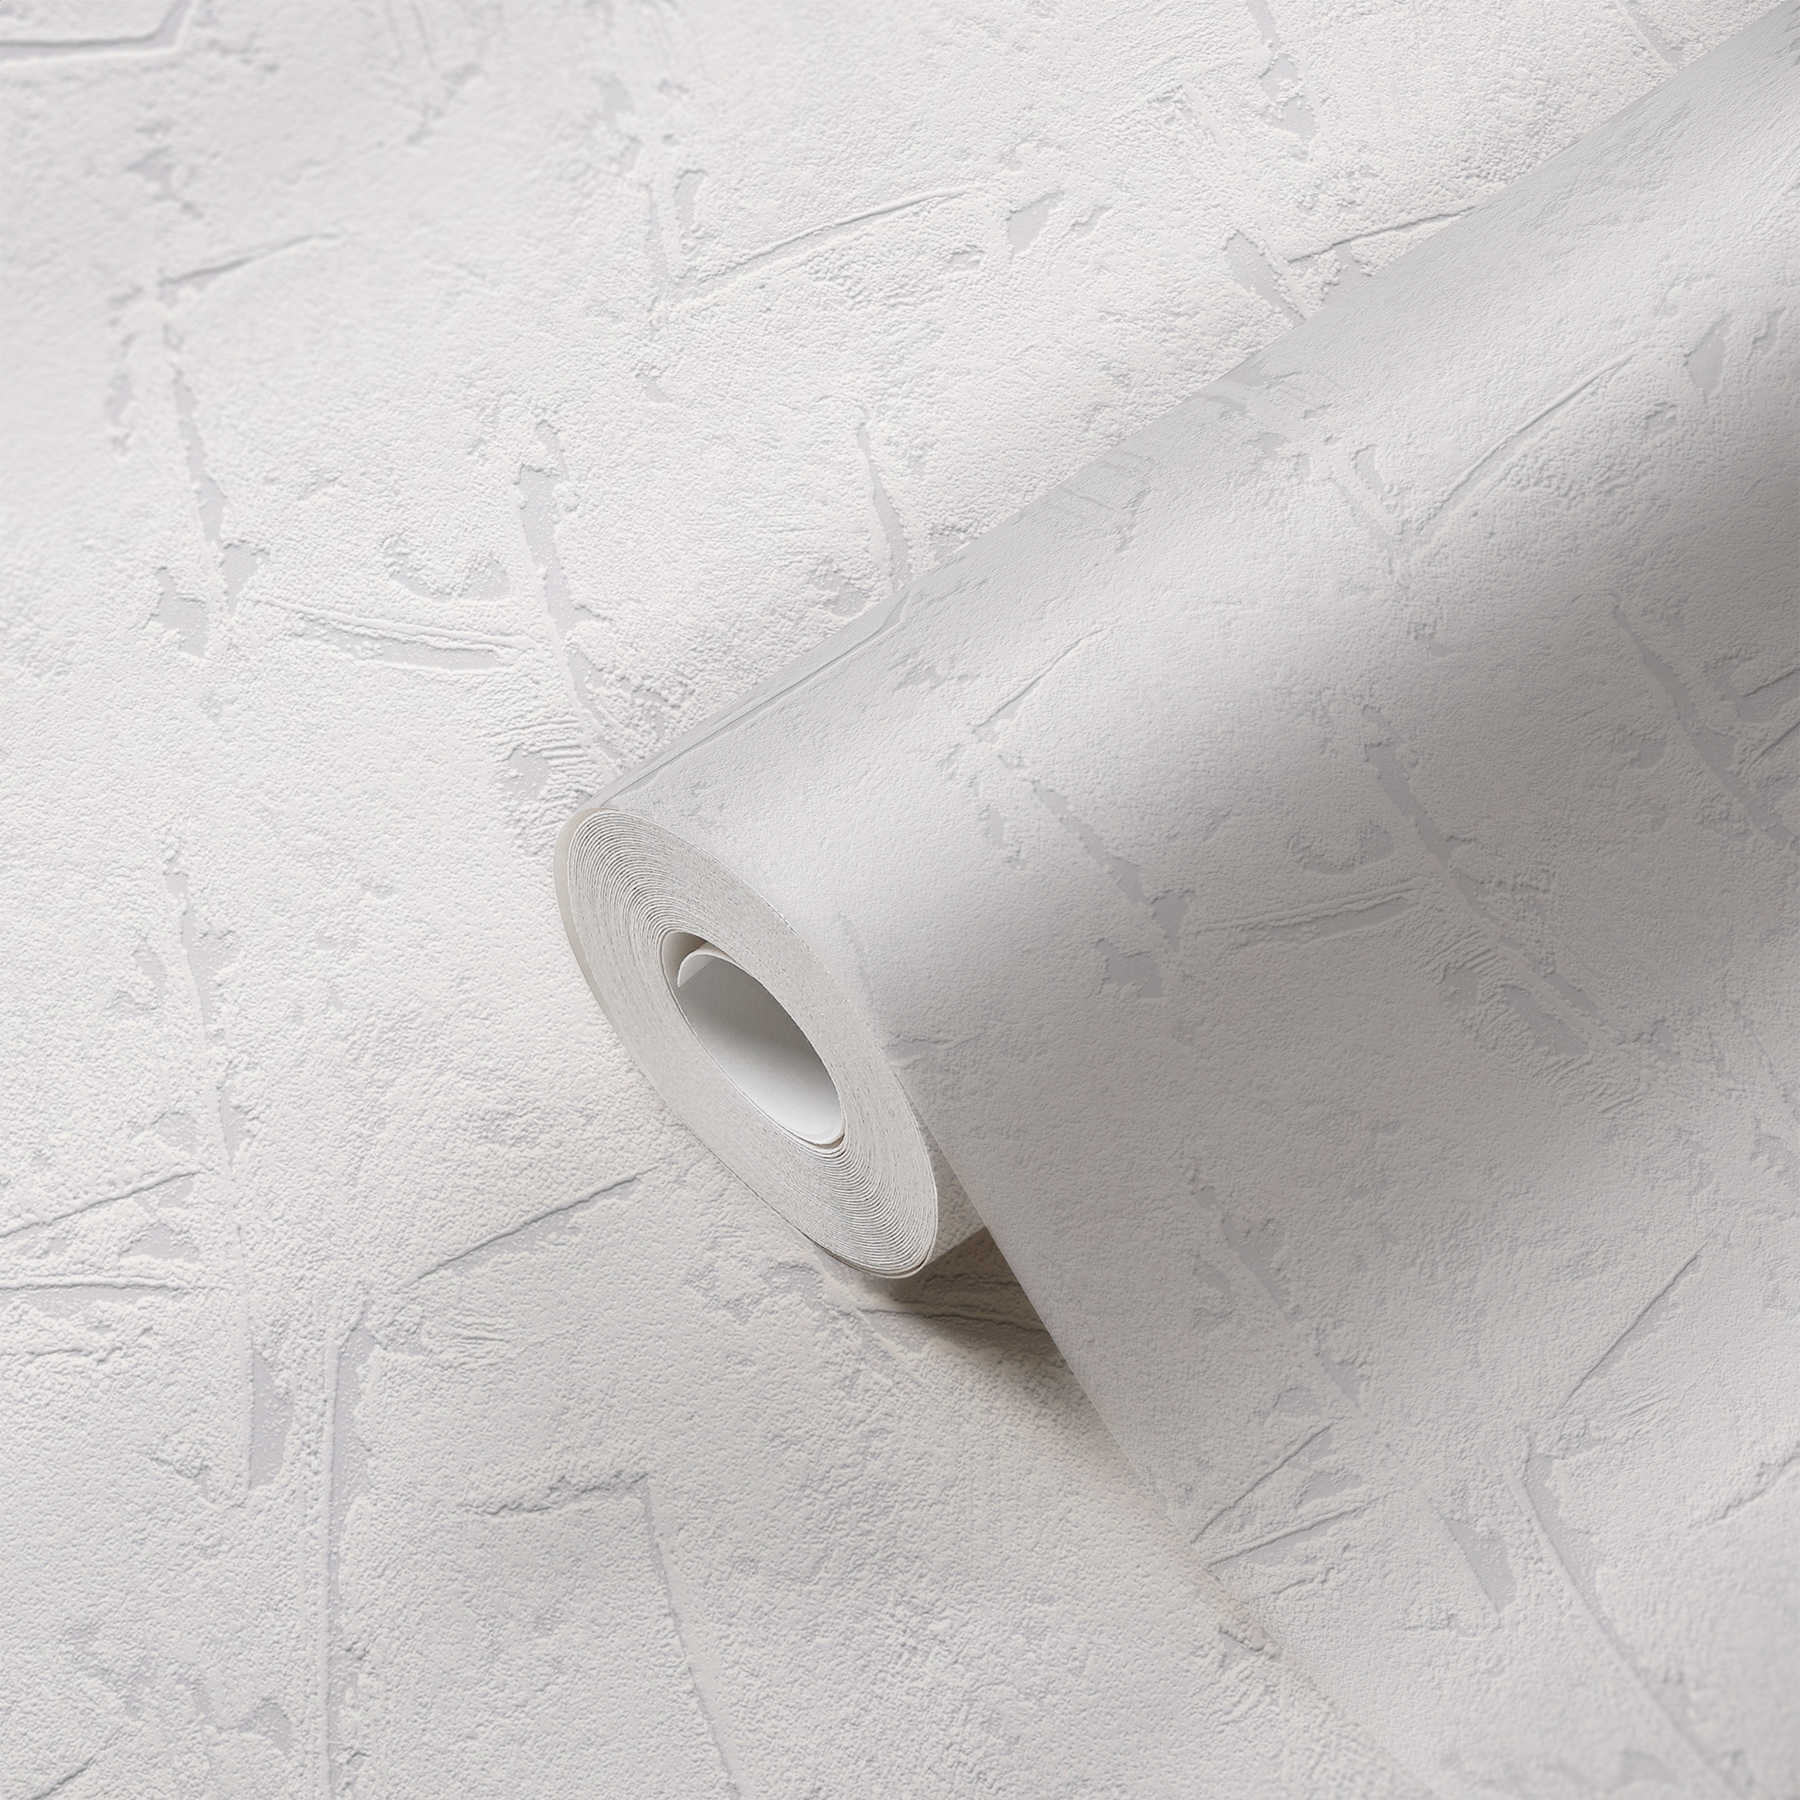             Papier peint blanc-gris avec surface crépie et effet 3D - gris, blanc
        